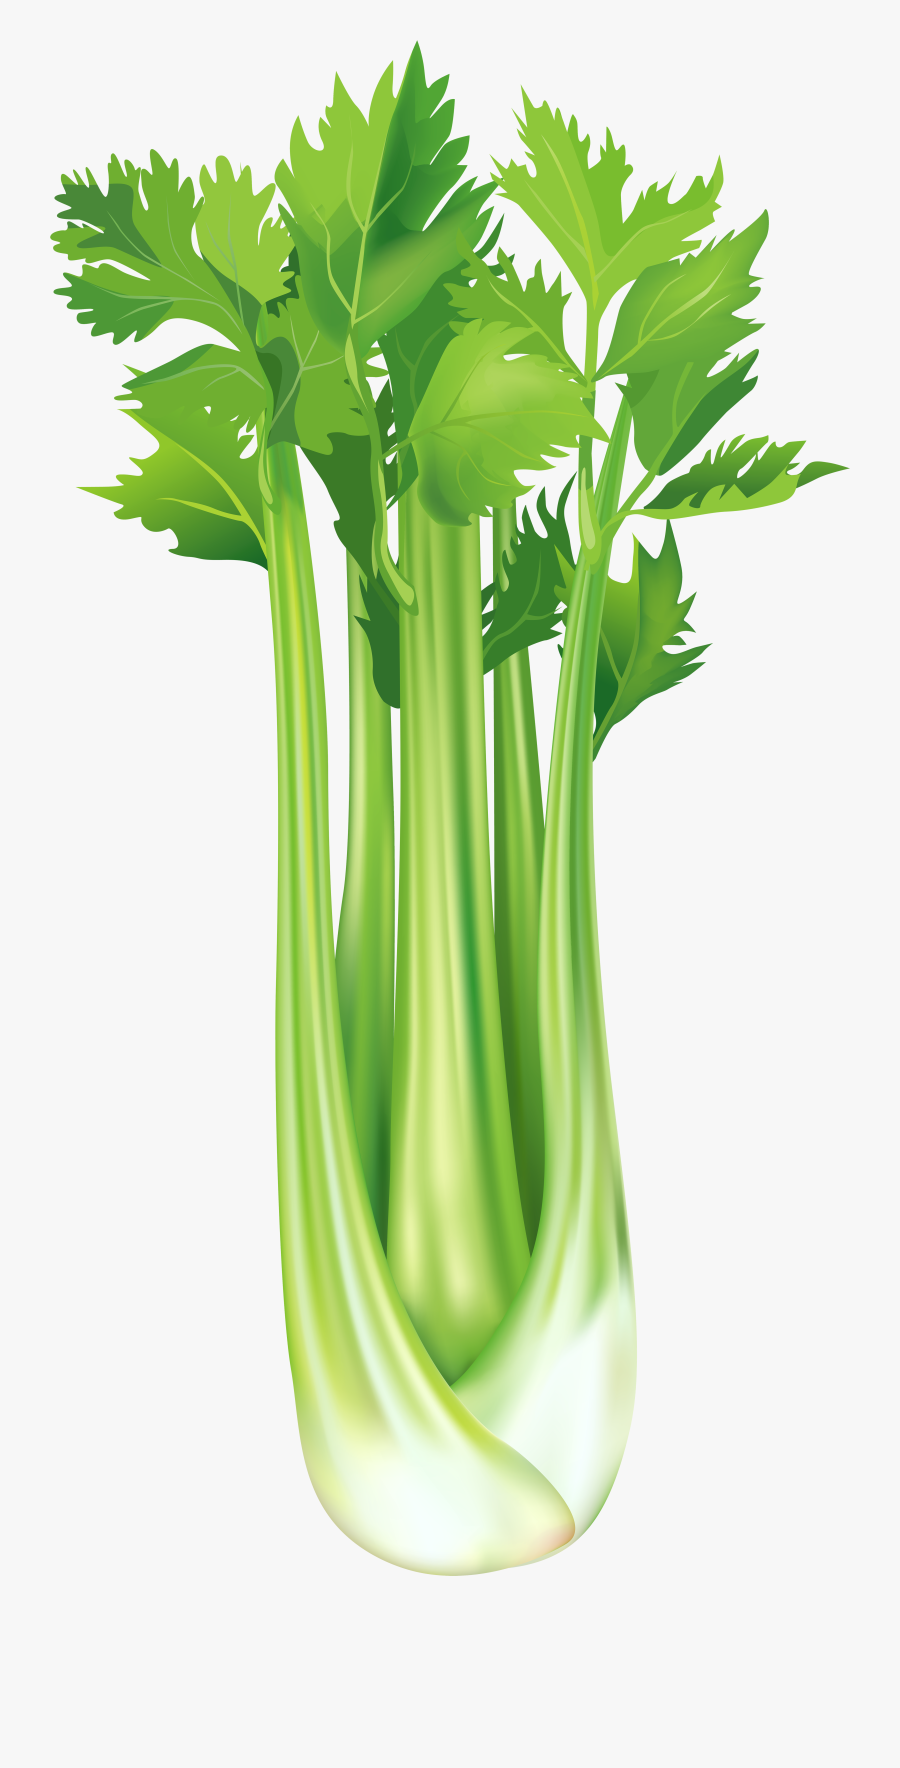 Clip Art Clipart Celery - Celery Clipart Transparent Background, Transparent Clipart